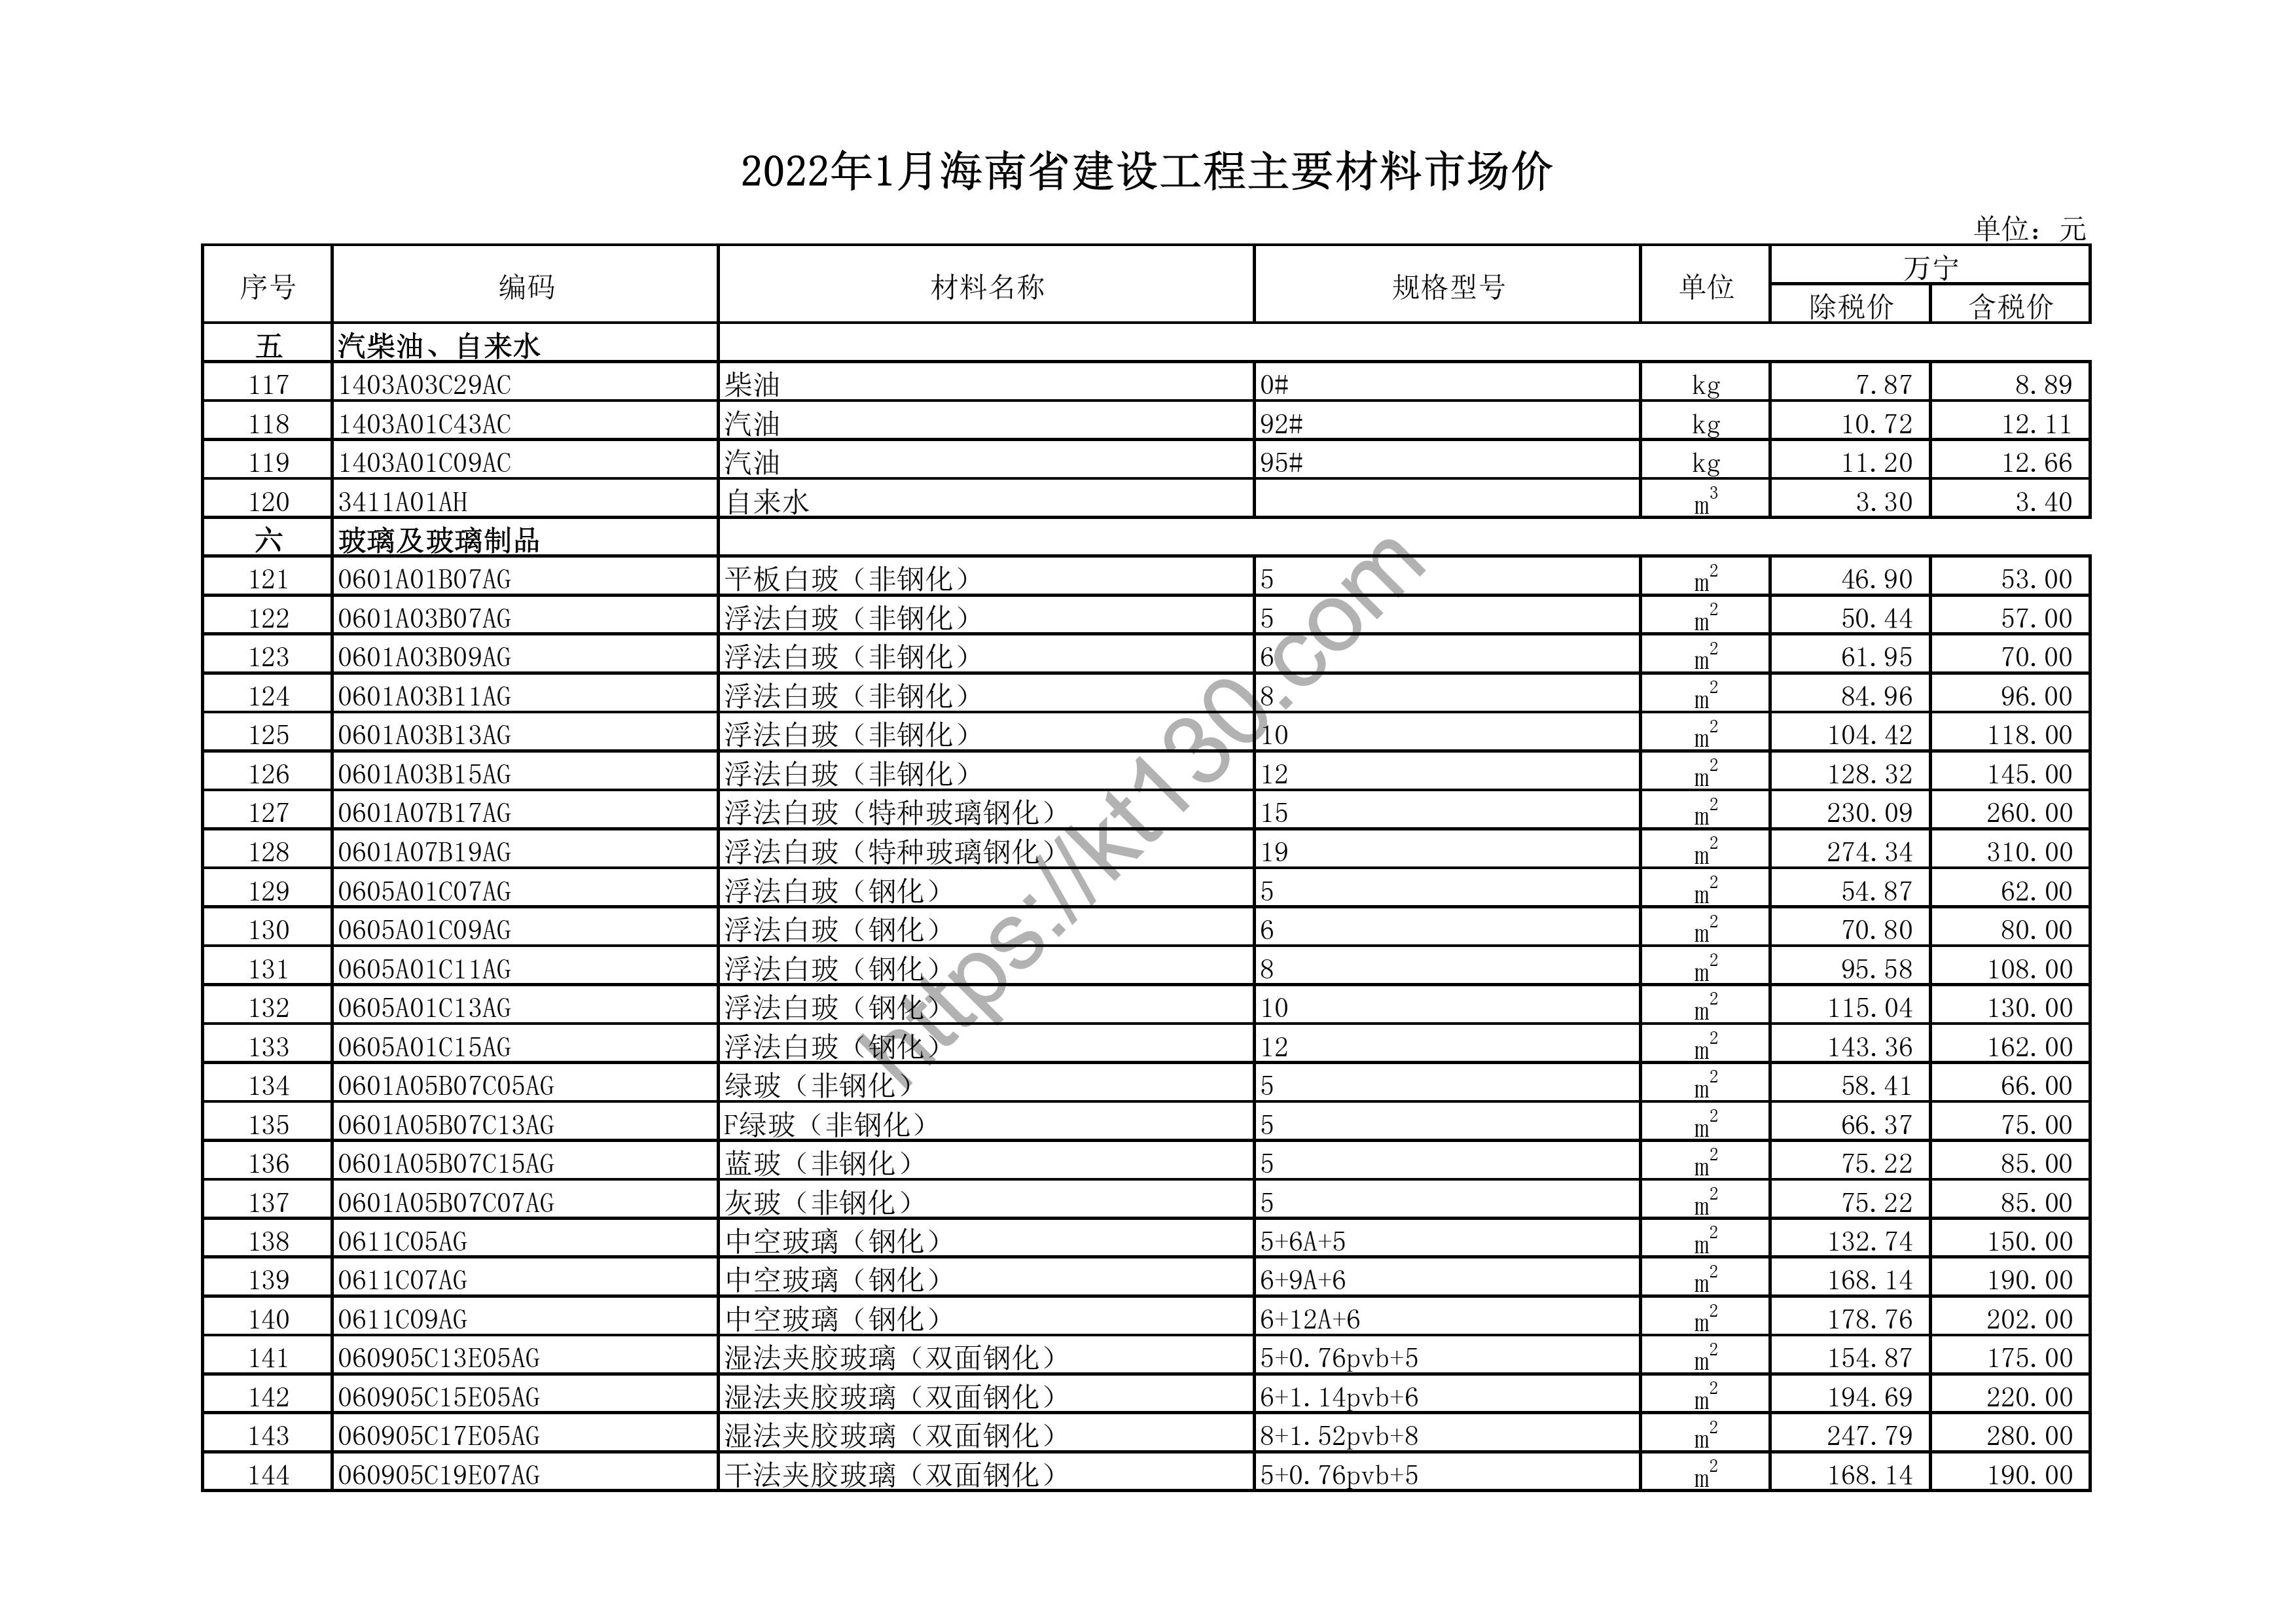 海南省2022年1月建筑材料价_浮法白玻璃_43660